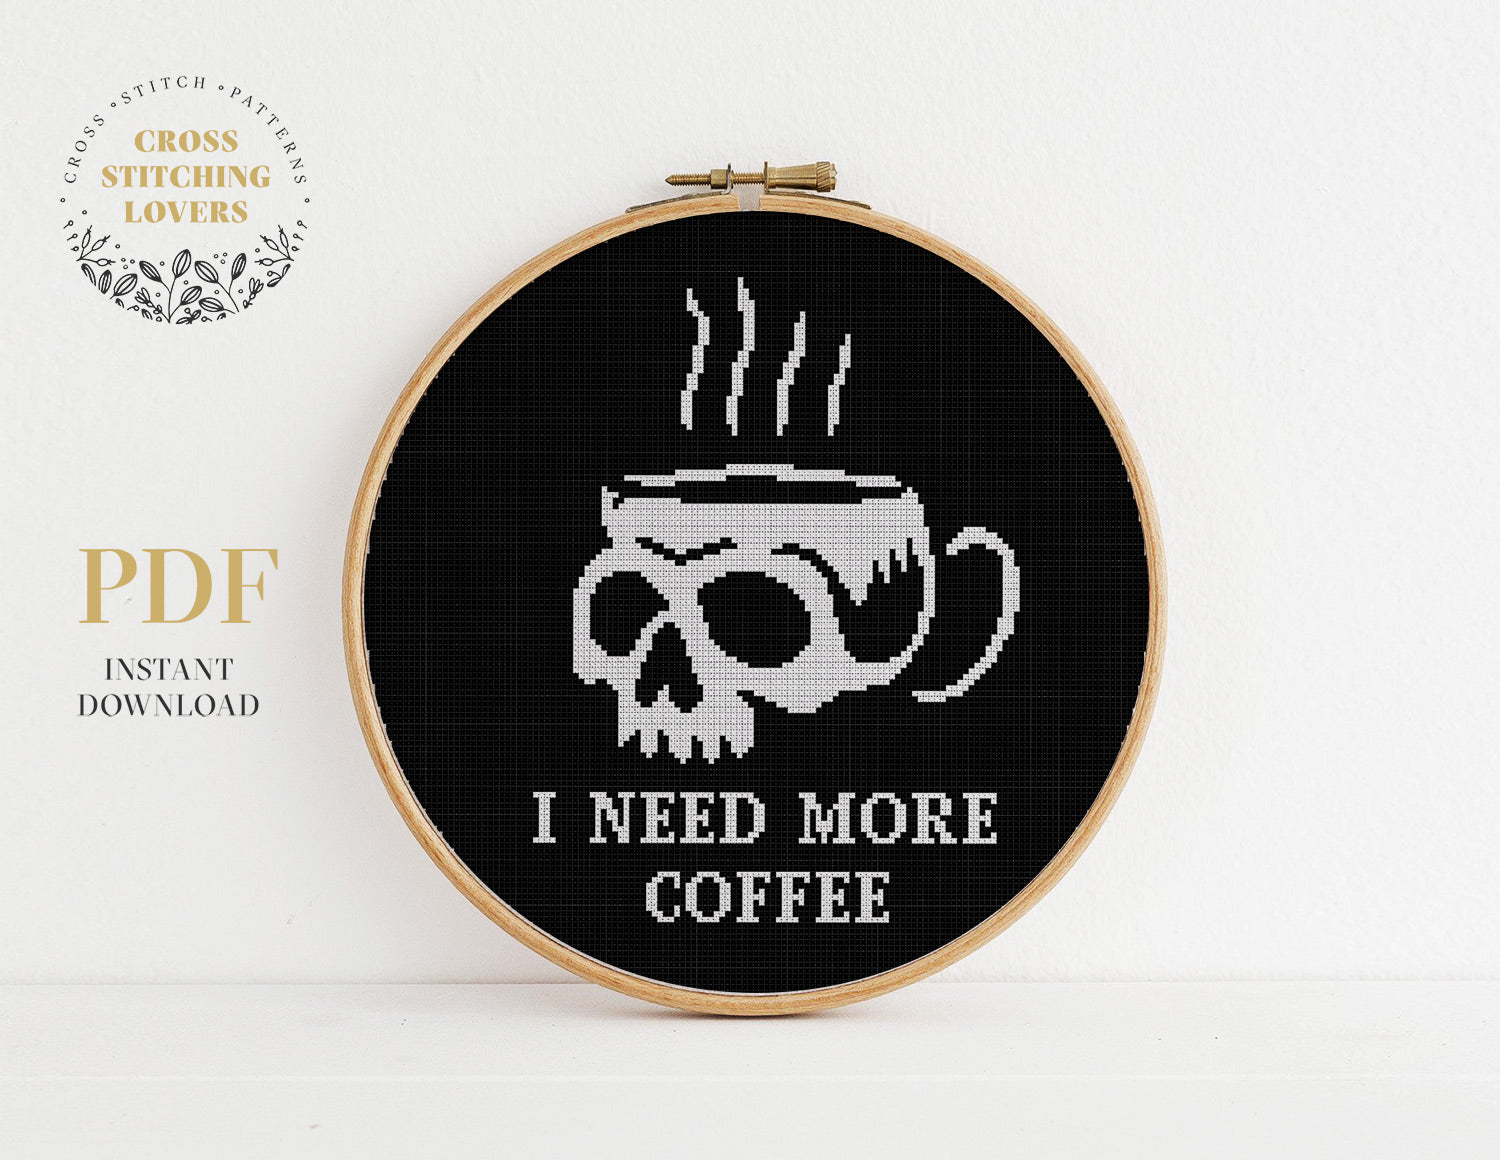 I need more coffee - Cross stitch pattern